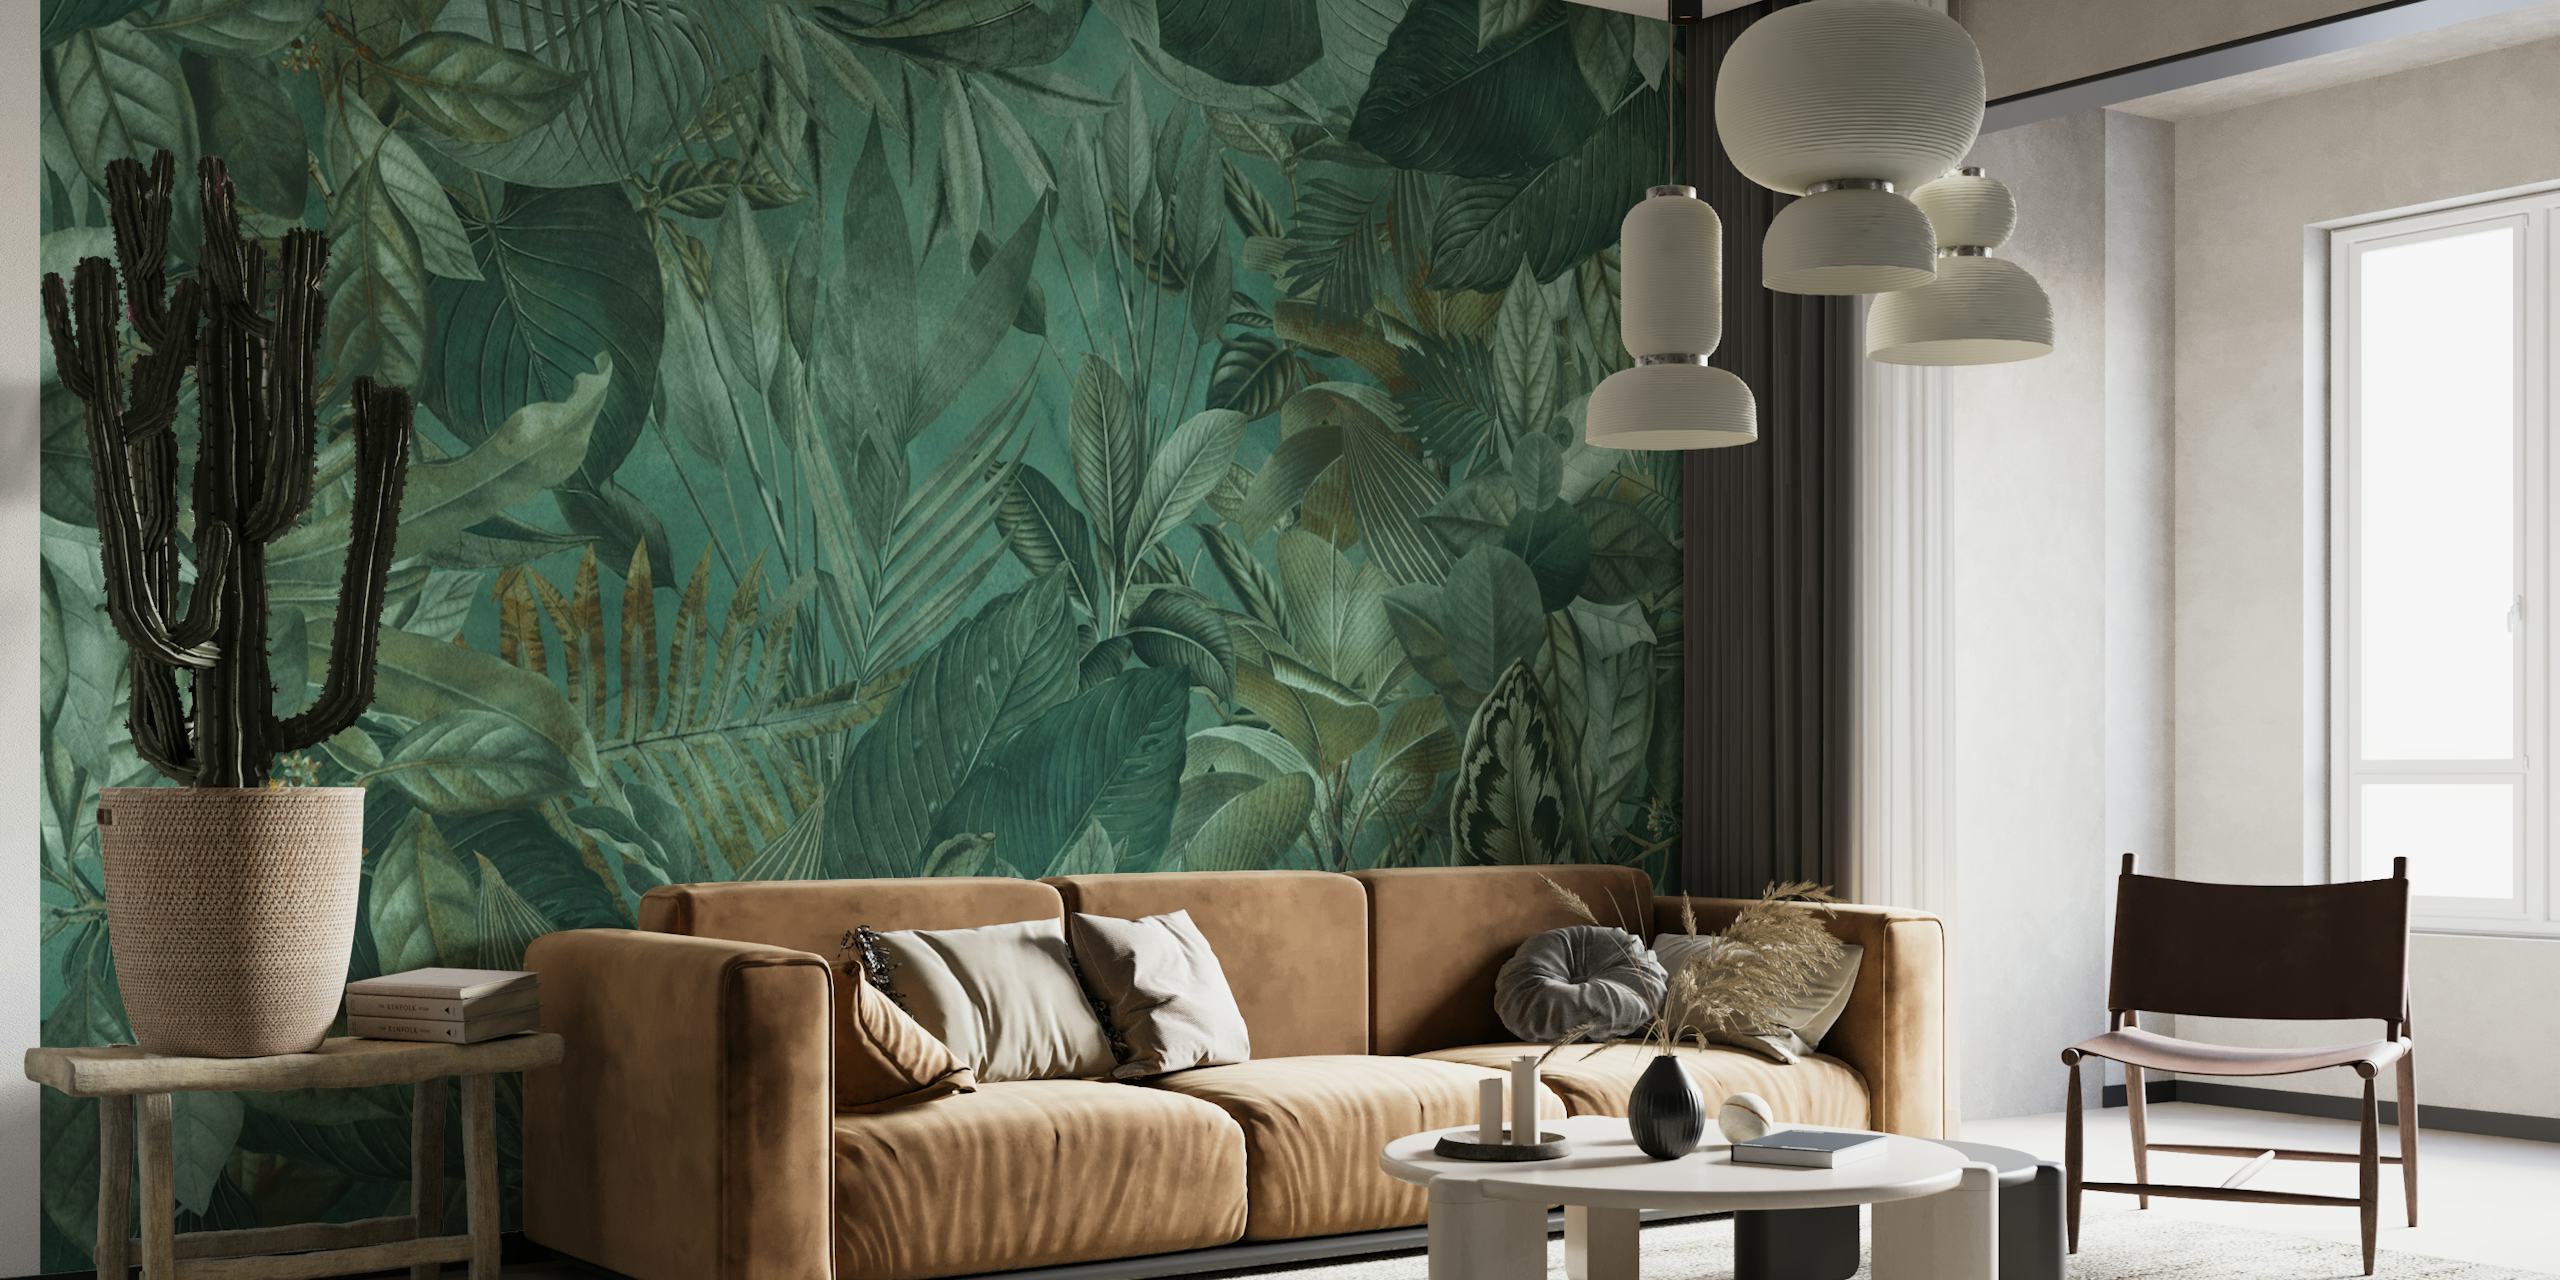 Smaragdgroene tropische jungle-thema muurschildering met dichte begroeiing en bloempatronen